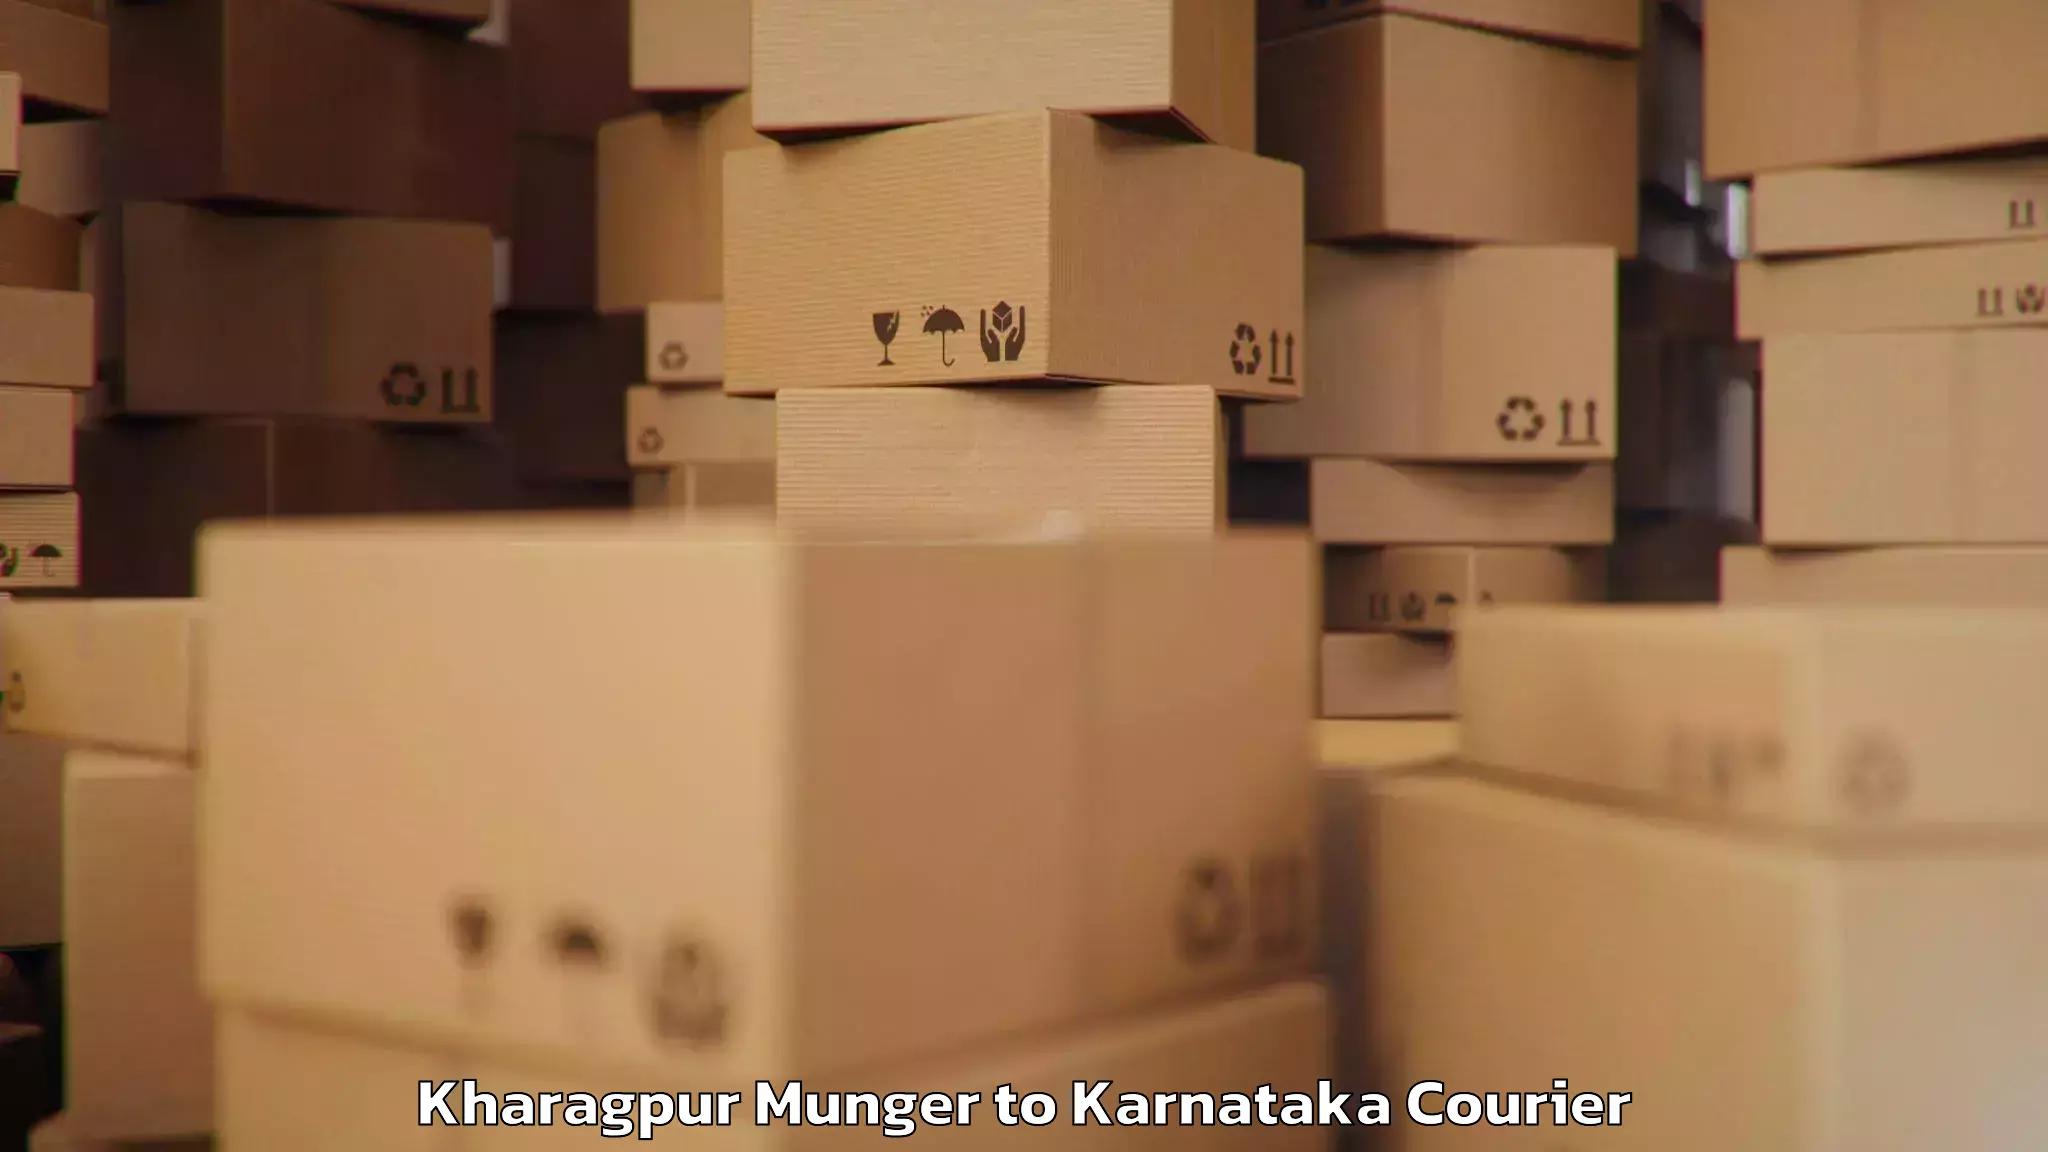 Luggage forwarding service Kharagpur Munger to Belur